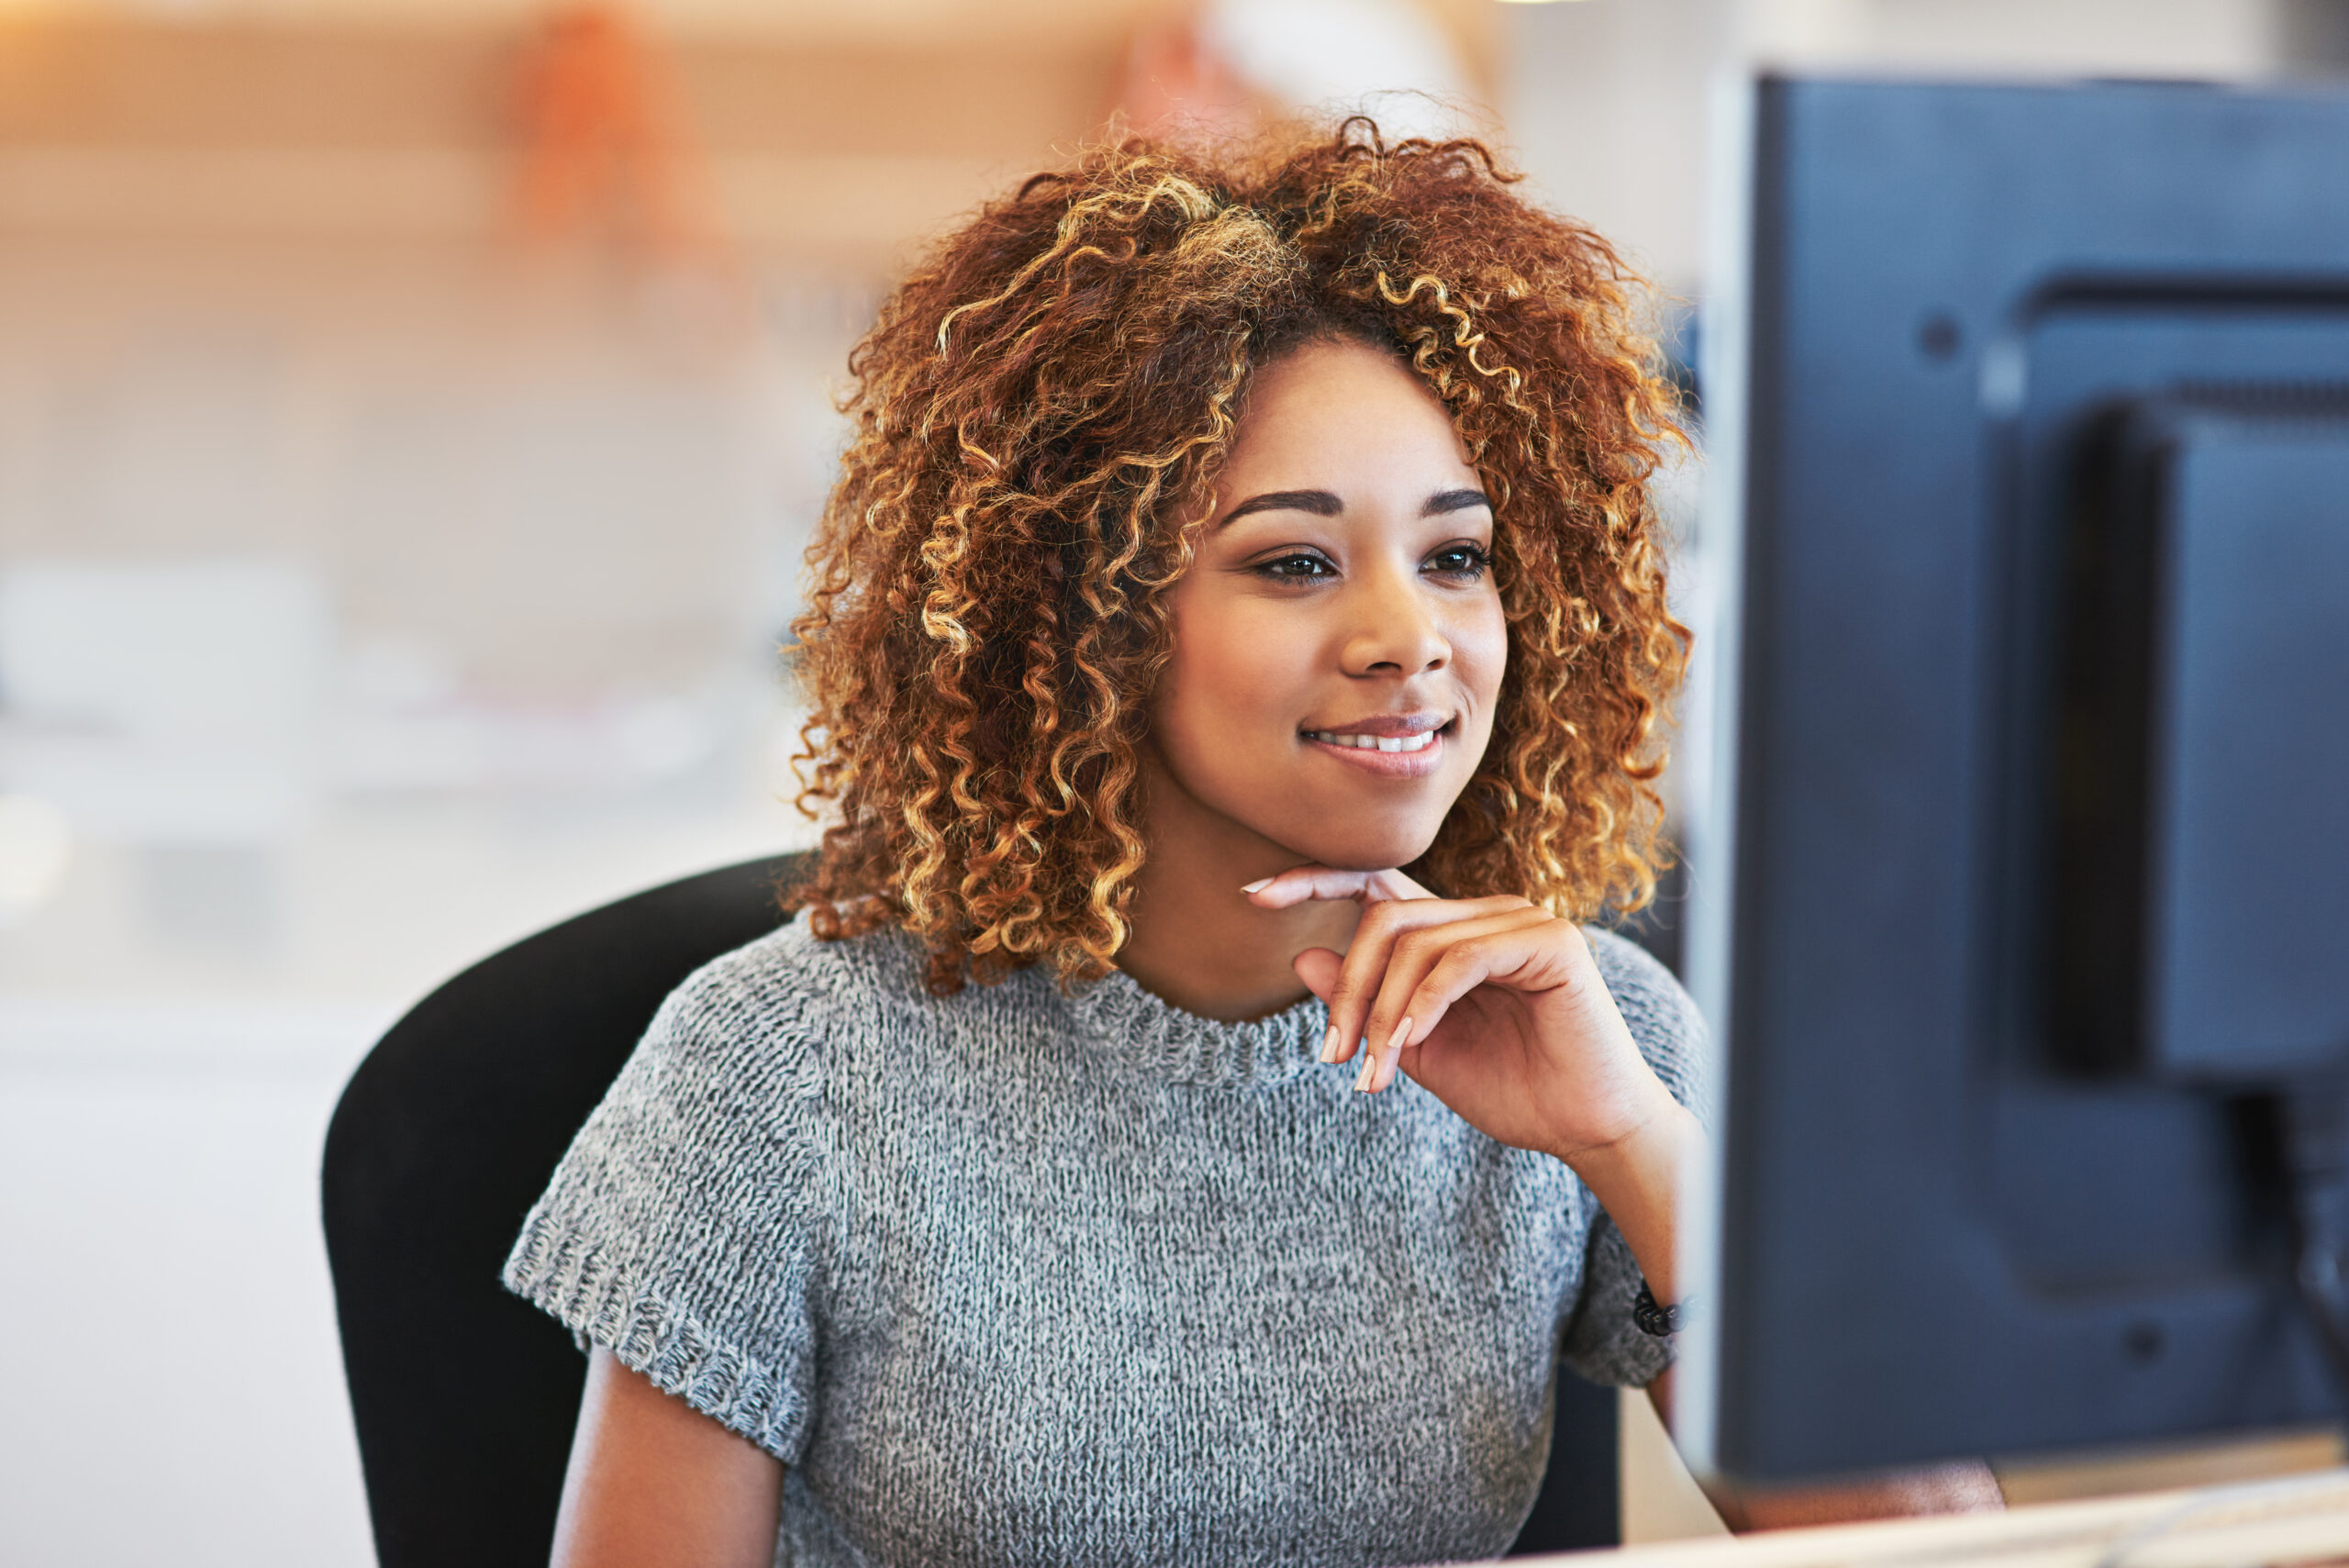 Jovem mulher negra, de cabelo médio e castanho claro. Usa blusa cinza e está sentada na cadeira e sorri enquanto olha o computador| Fonte da imagem: Envato